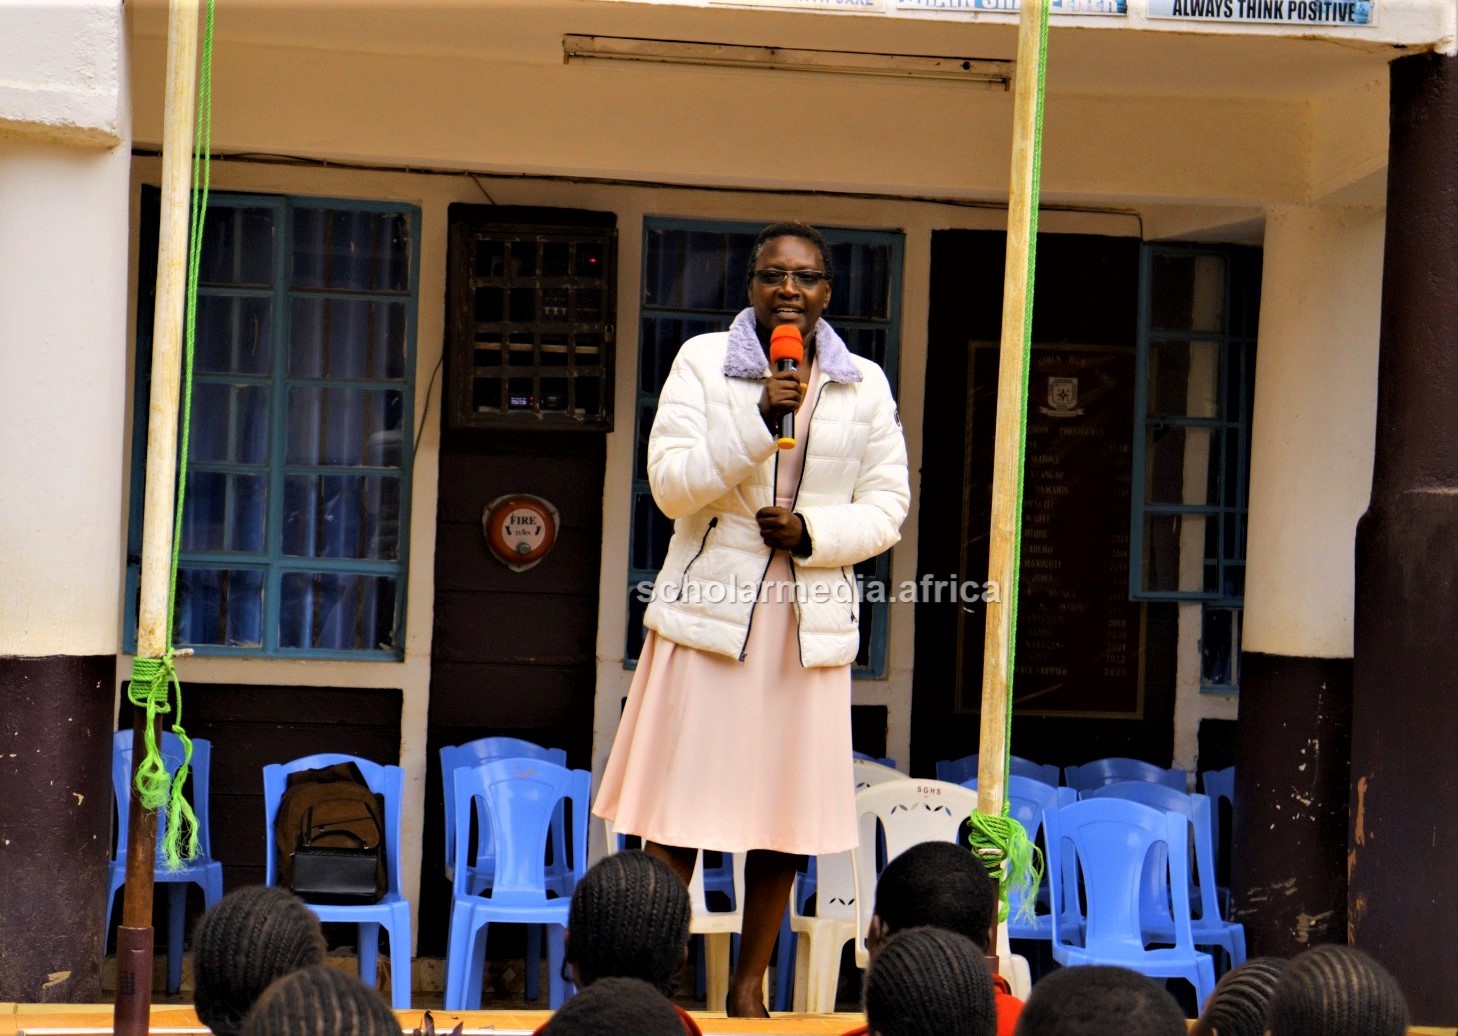 Dr. Stellah Omari, the guest speaker, advising the students. PHOTO/Josephat Nehemiah, Scholar Media Africa. 